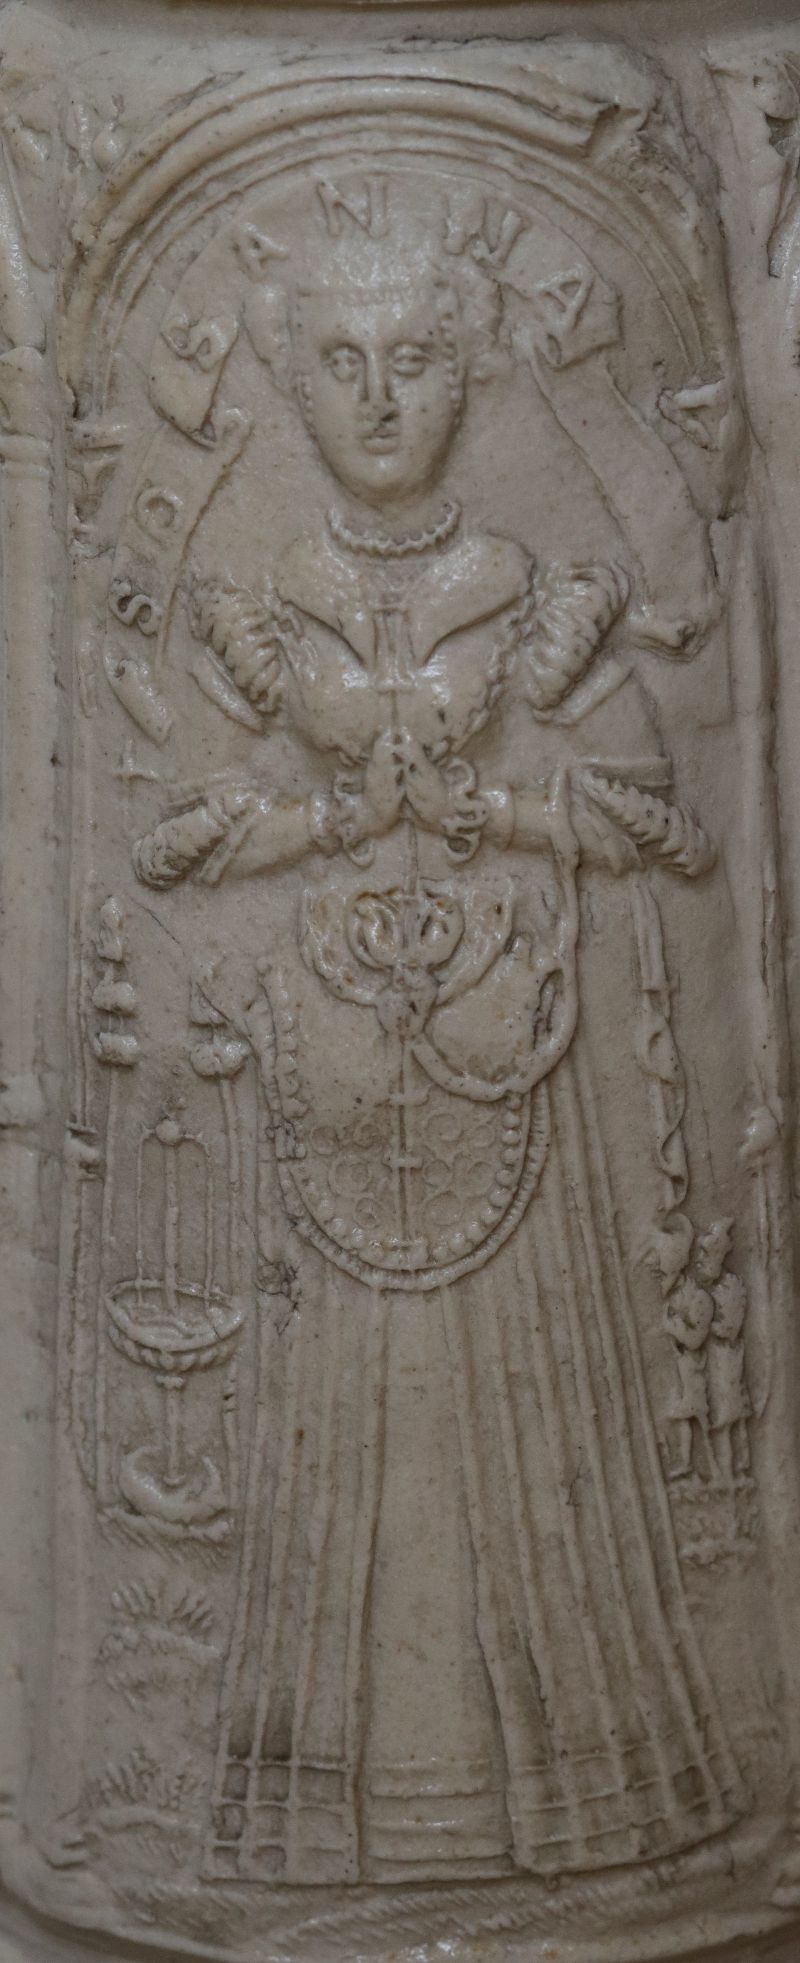 Details saltglazed stoneware Siegburg Flagon dated 1565 applied relief Susanna